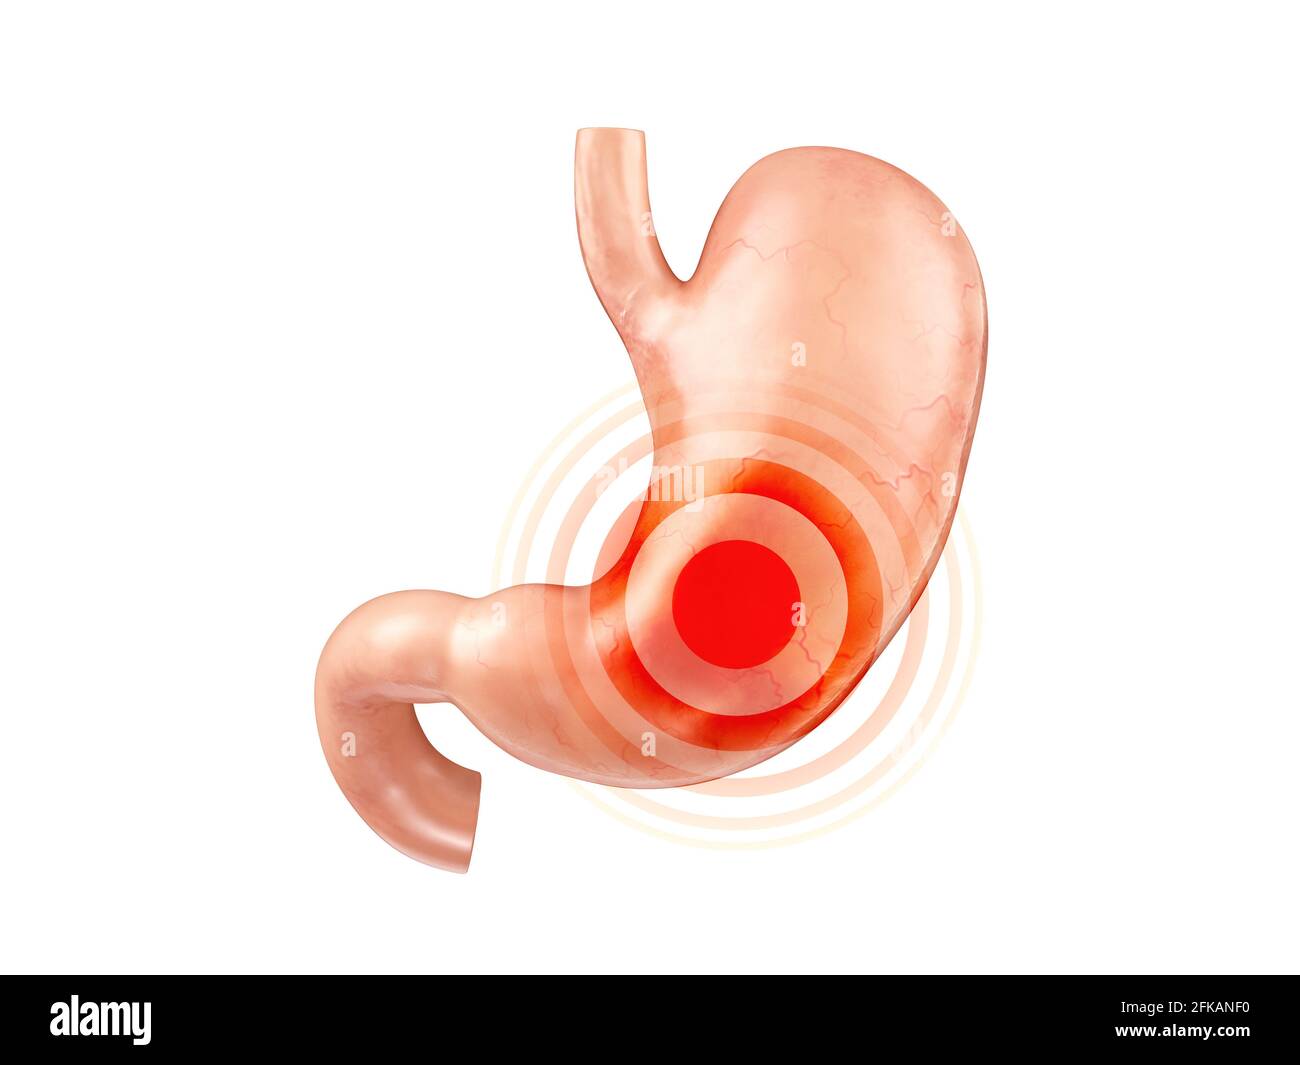 Anatomisch genaue realistische 3d-Darstellung des menschlichen inneren Organs - Magen mit Duodenum isoliert auf weißem Hintergrund Stockfoto